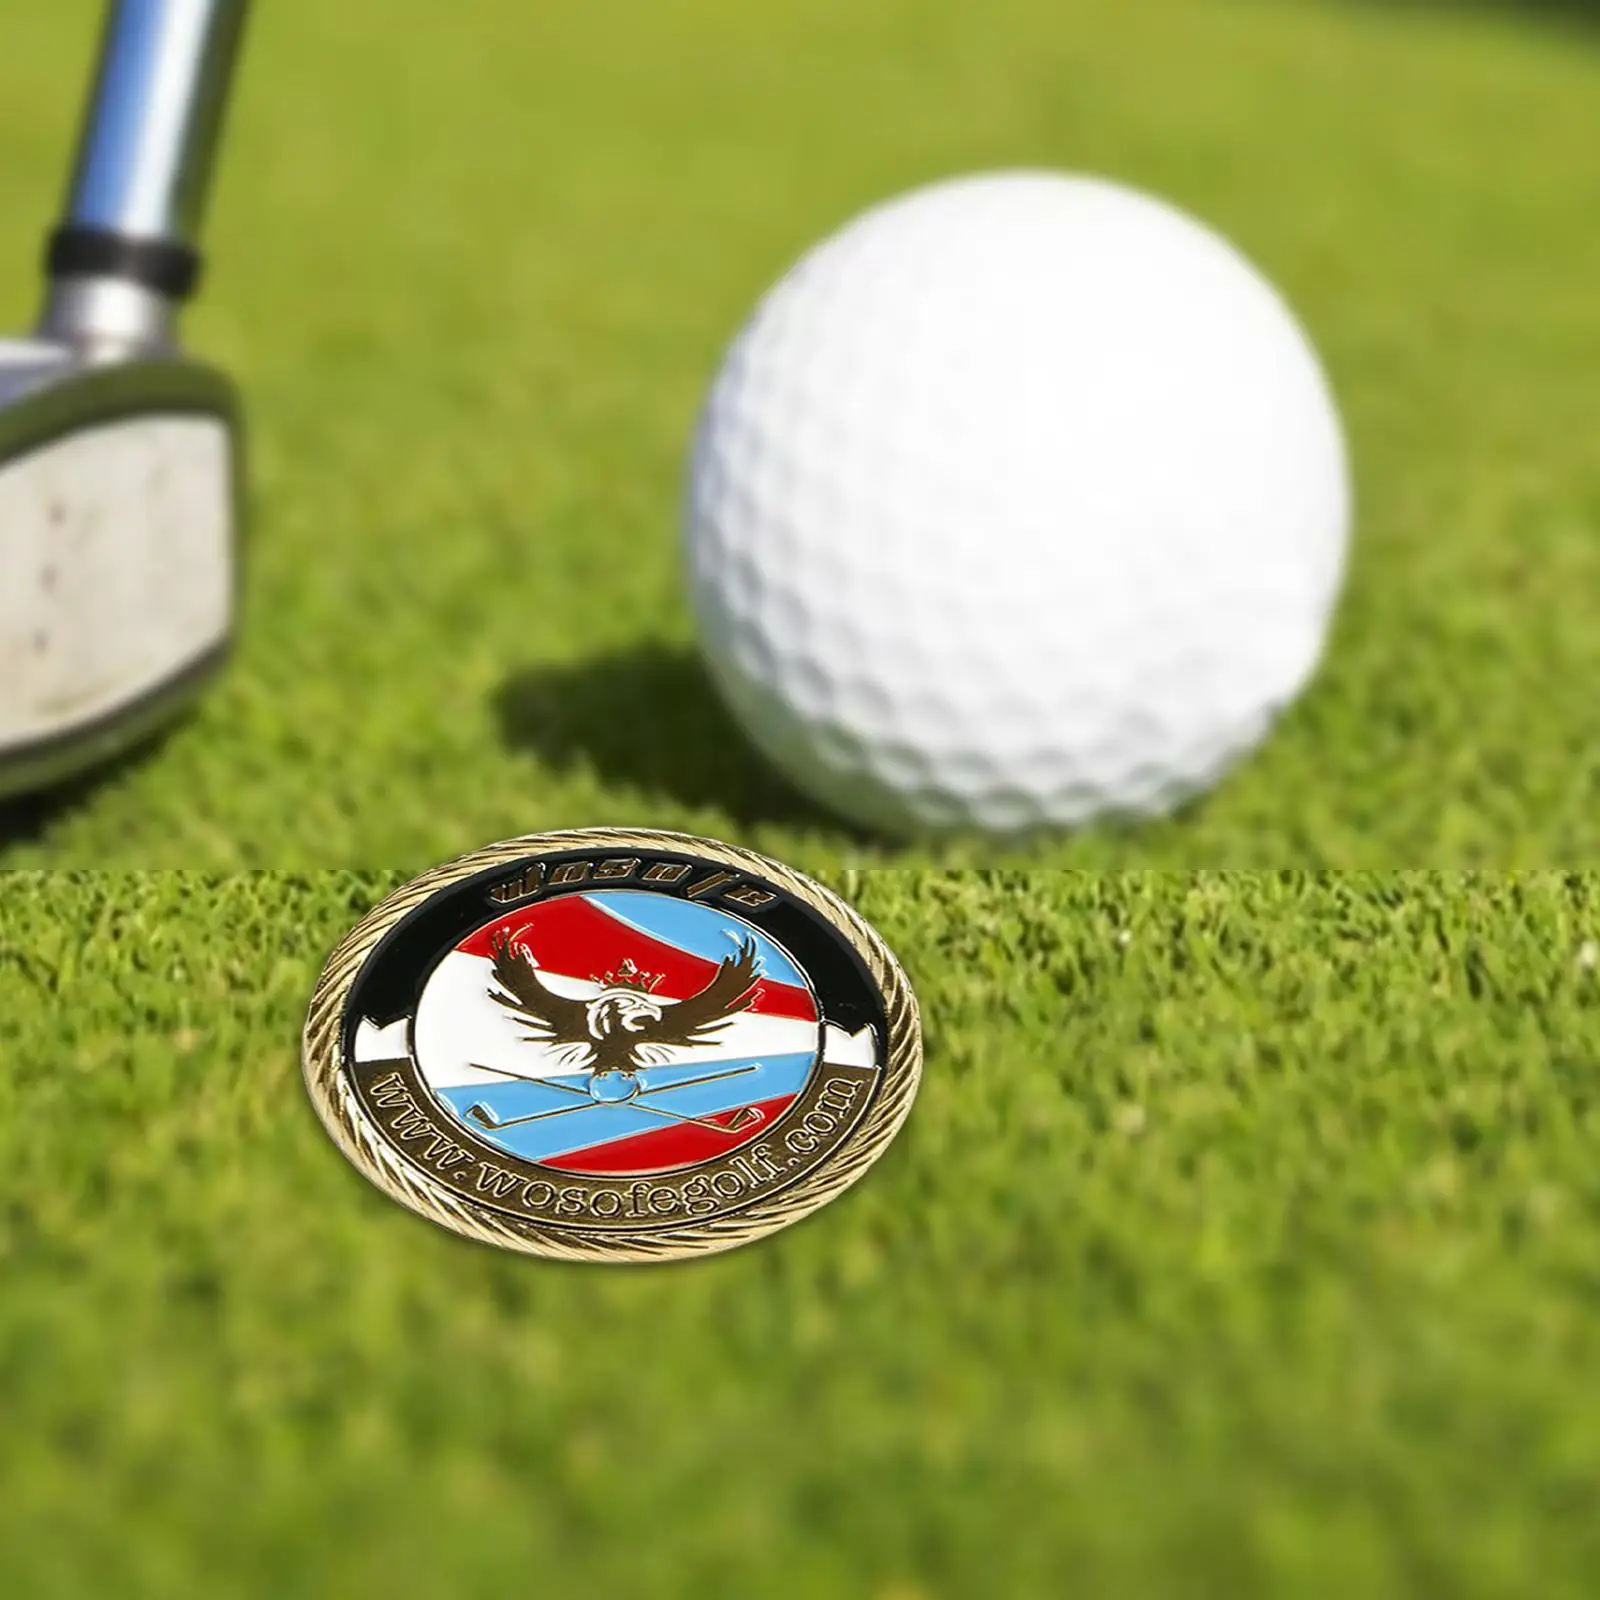 Zinc Alloy Golf Ball Marker Magnetic Putt Sign Putting Position Mark Keepsake Golfer Gift Accessories